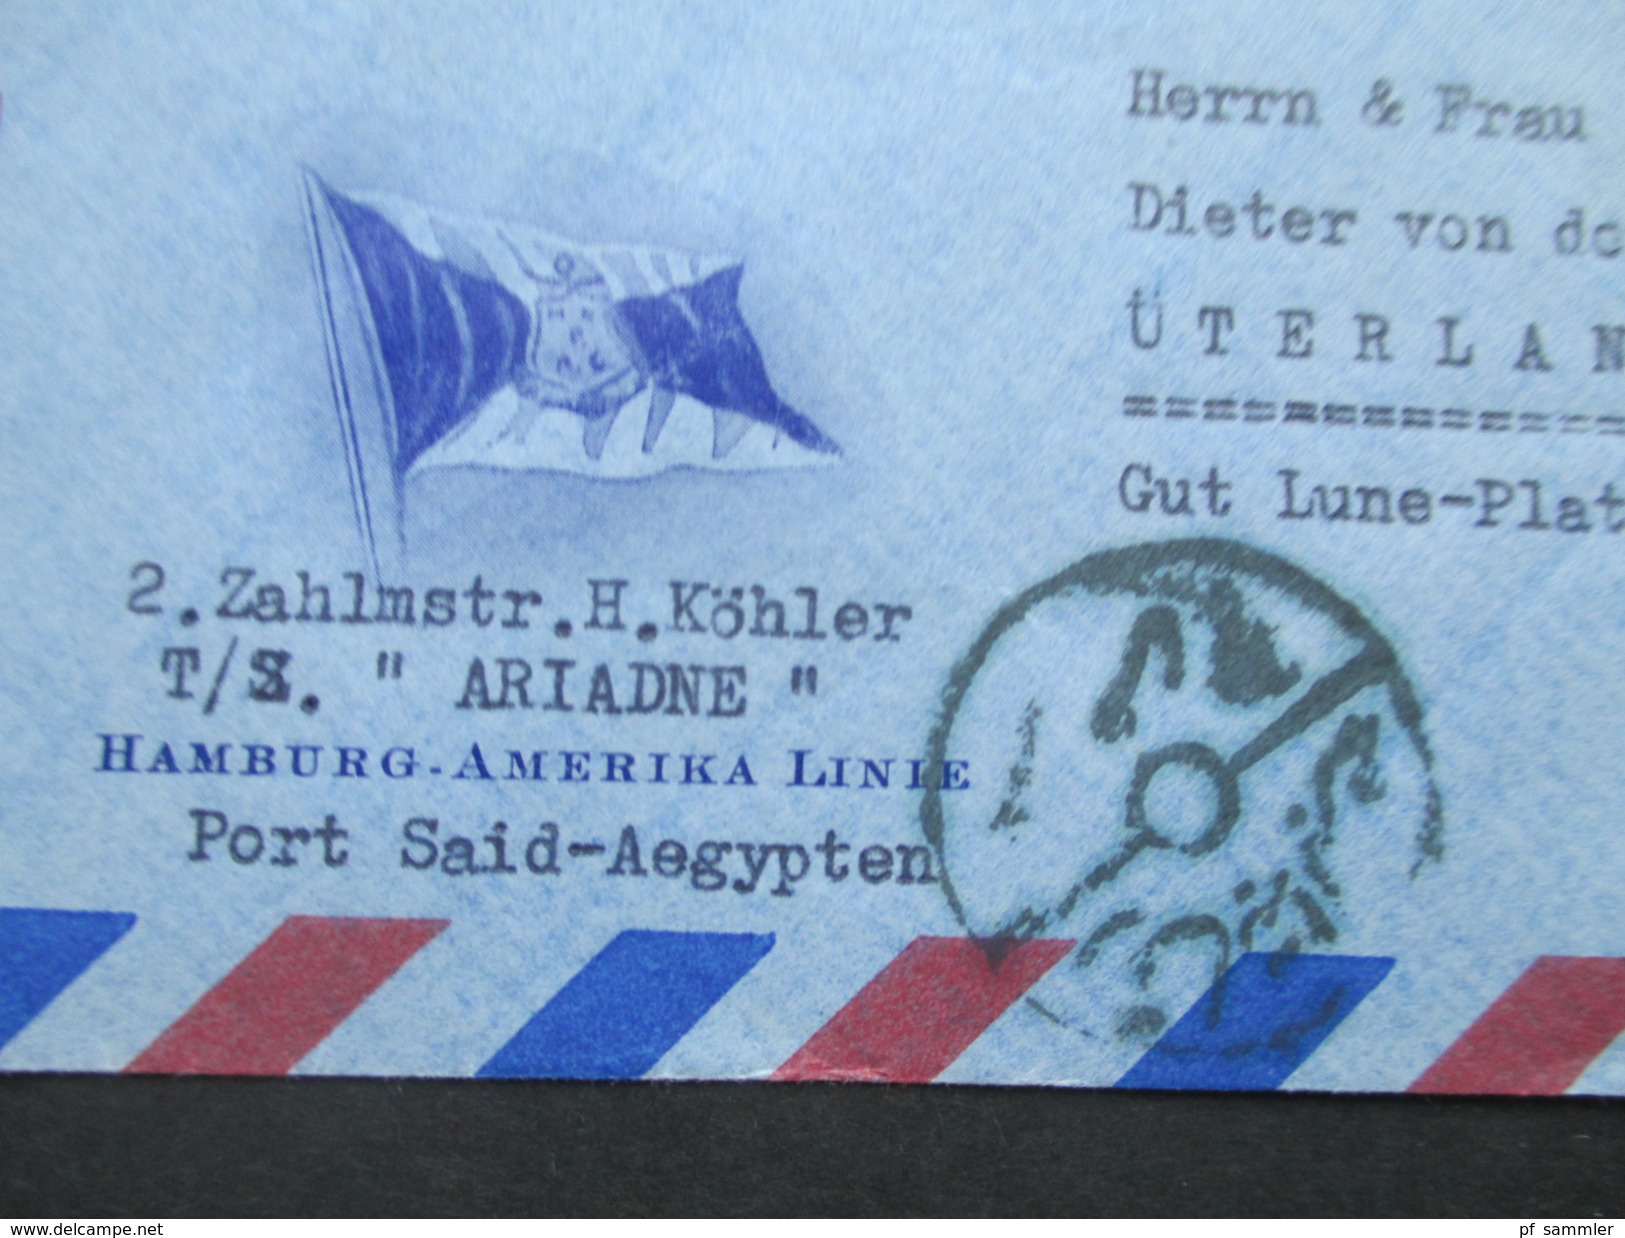 Ägypten 1950er Jahre Luftpostbrief / Schiffspost Hamburg - Amerika Linie. TS Ariadne. Nach Üterlande.Interessanter Beleg - Brieven En Documenten